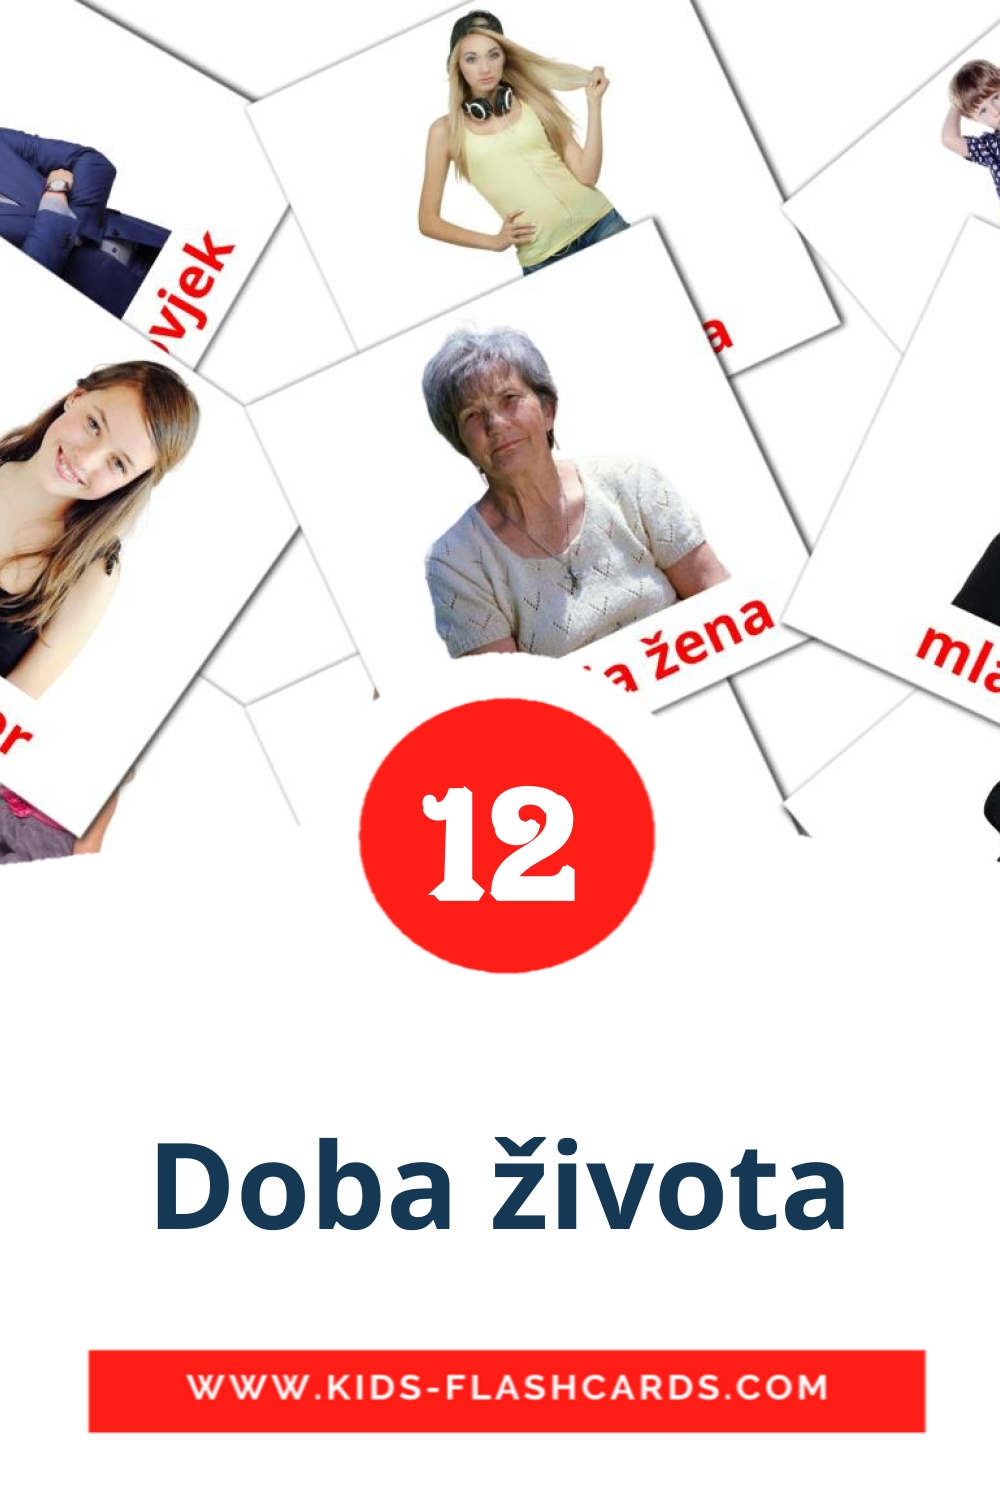 Doba života на боснийском для Детского Сада (12 карточек)